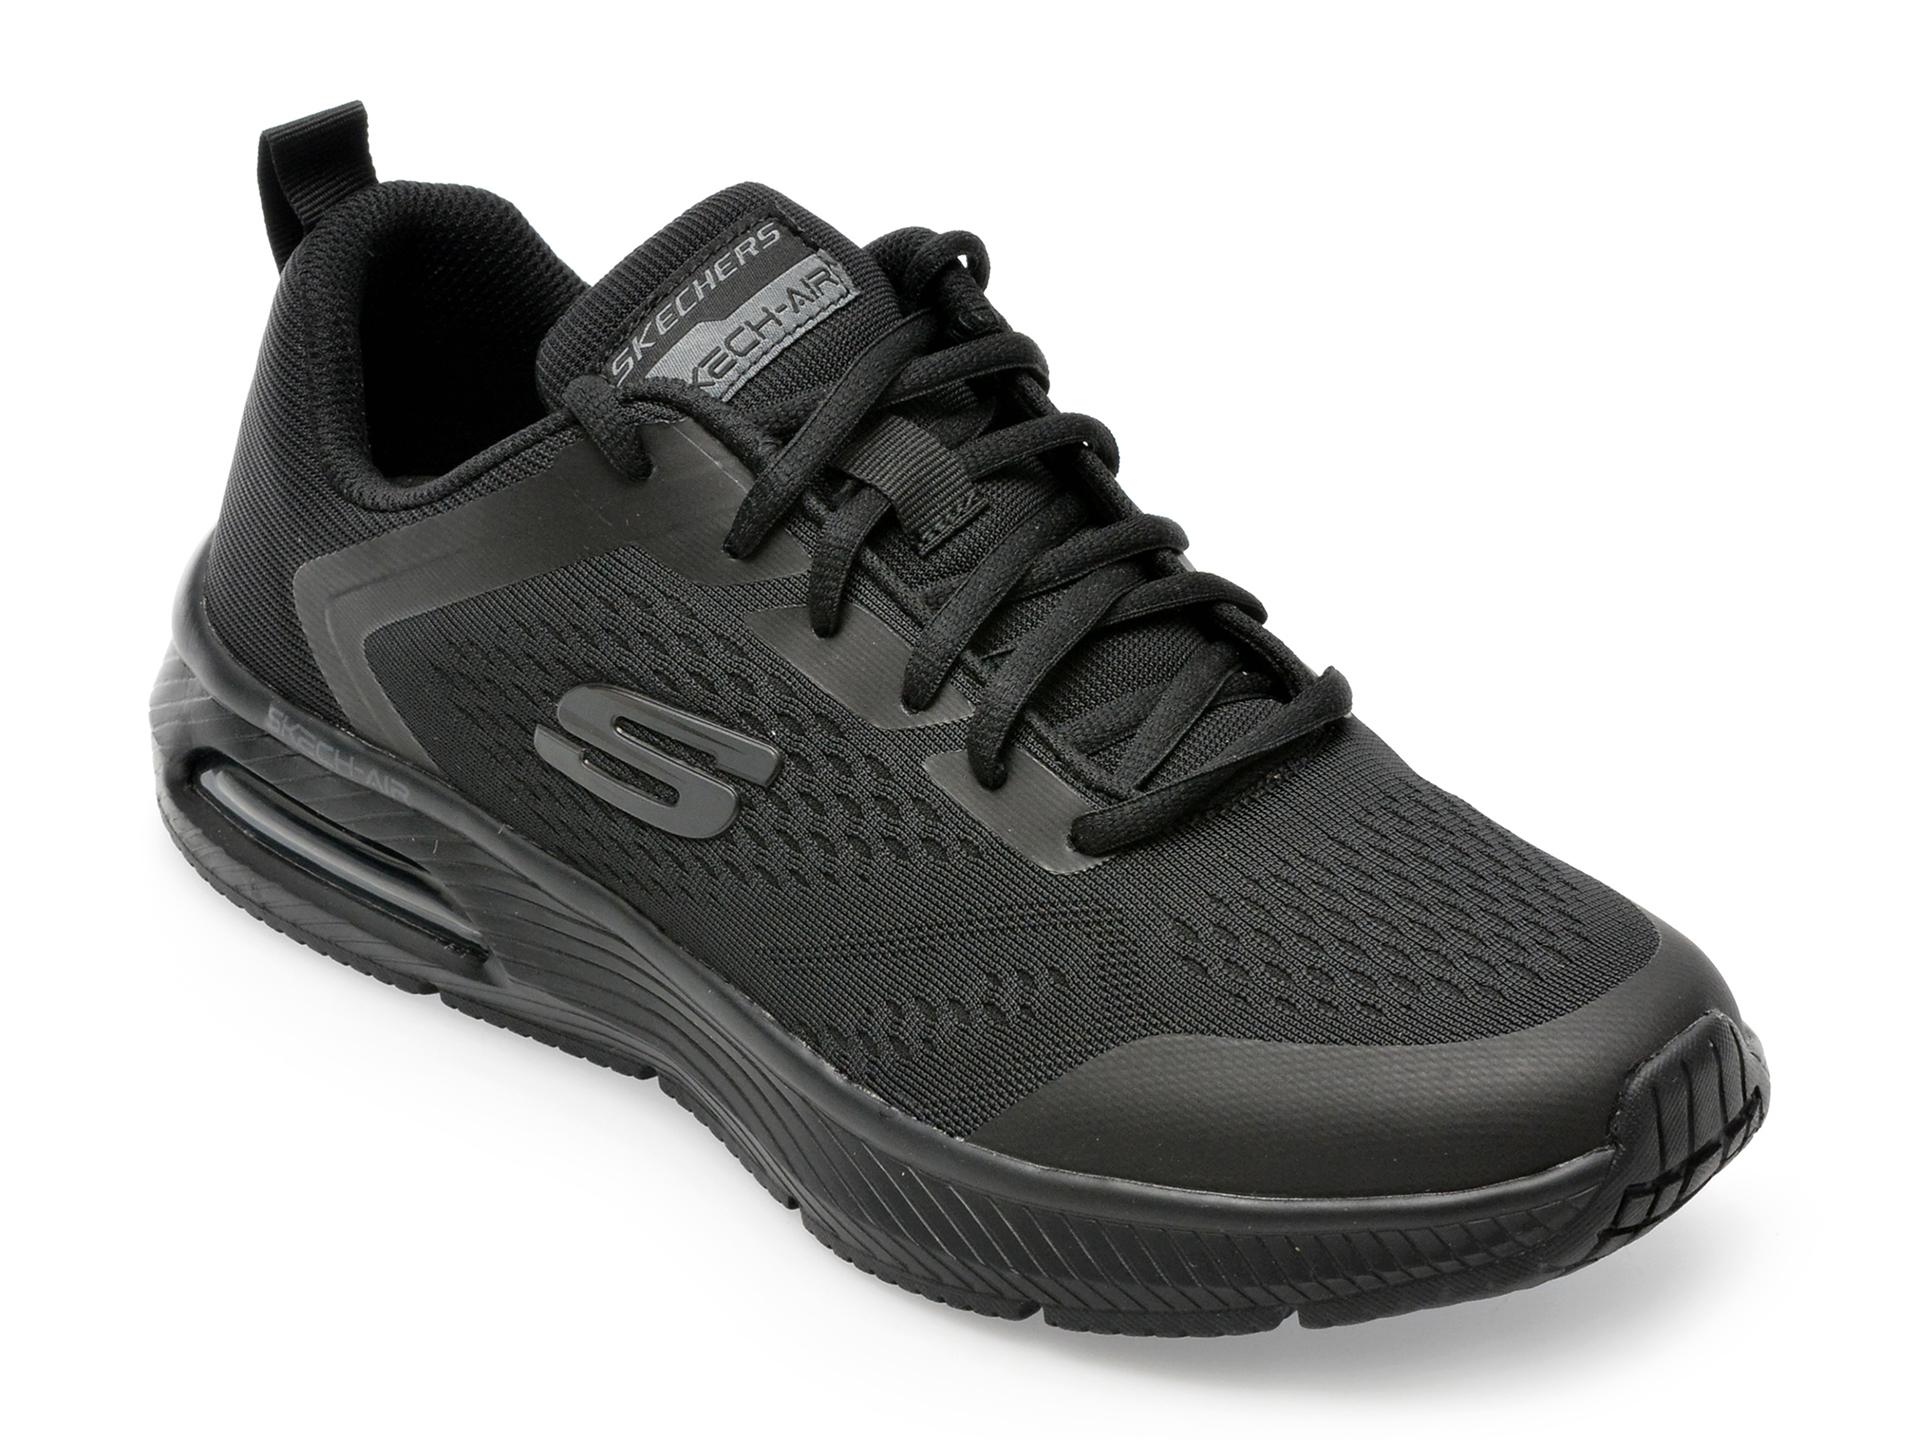 Pantofi SKECHERS negri, 52559, din material textil /barbati/pantofi